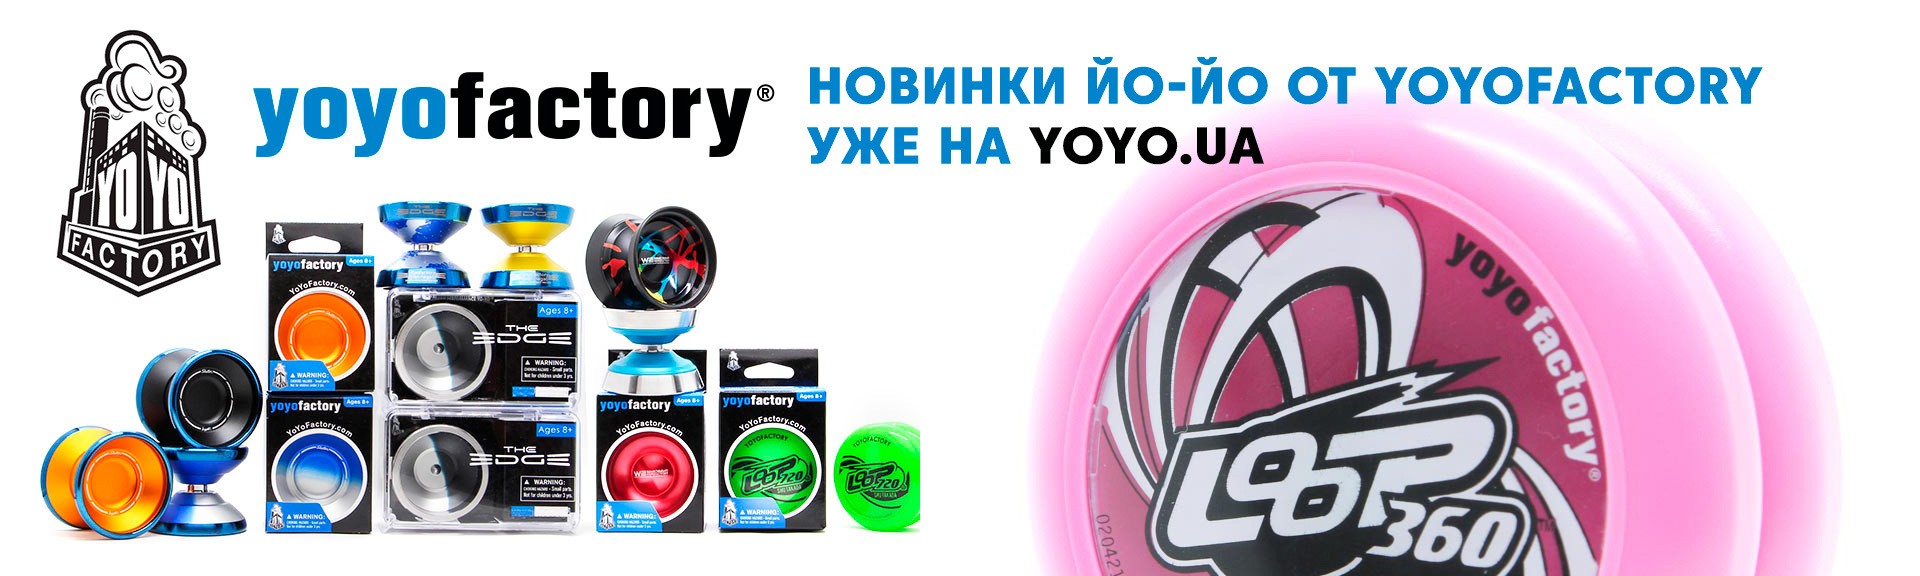 Yoyofactory йо-йо купить в Украине